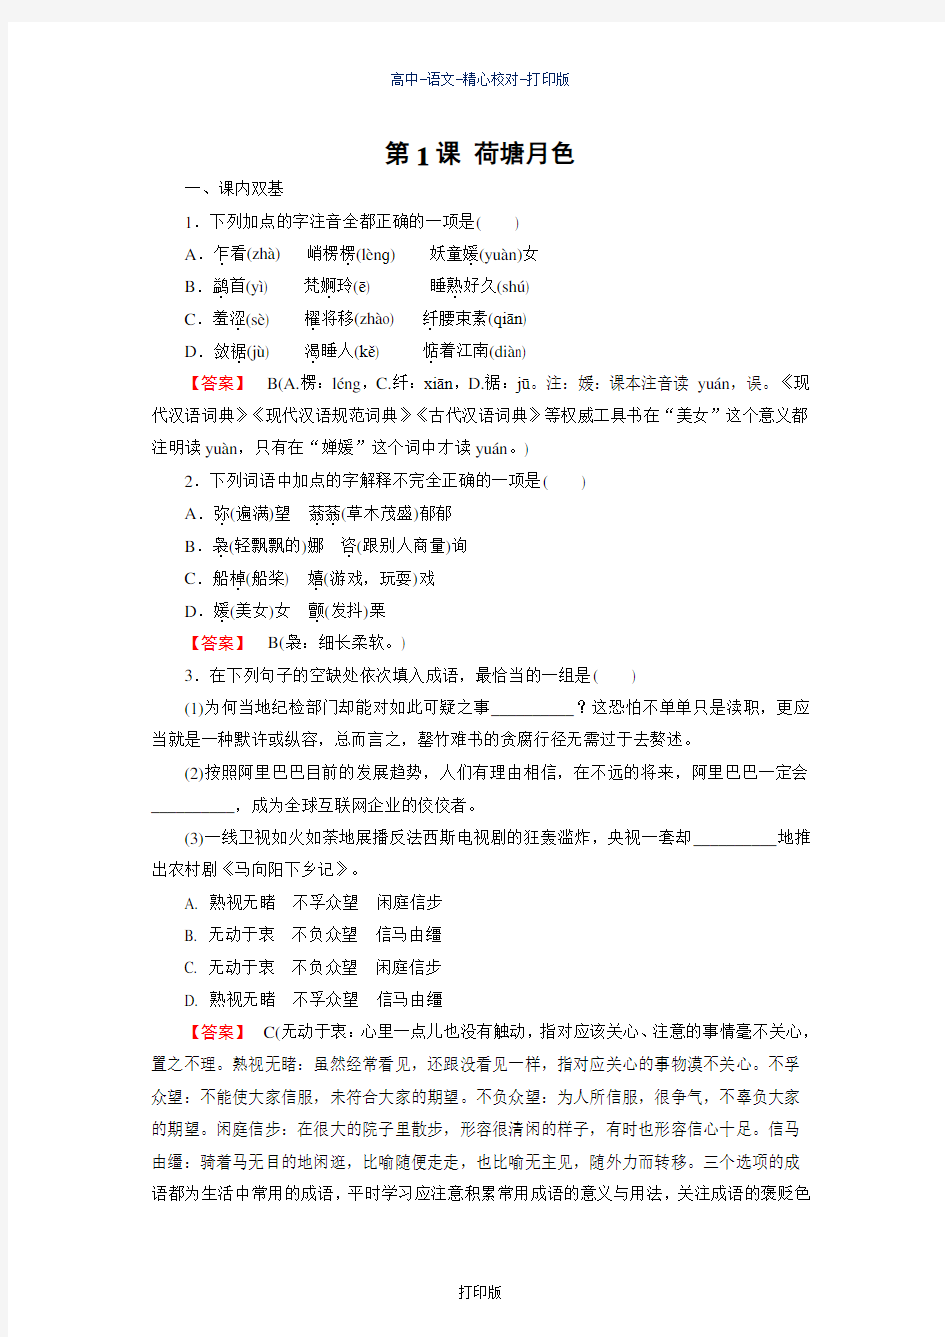 北京版-语文-高一-高中语文北京版同步作业 1.1 荷塘月色